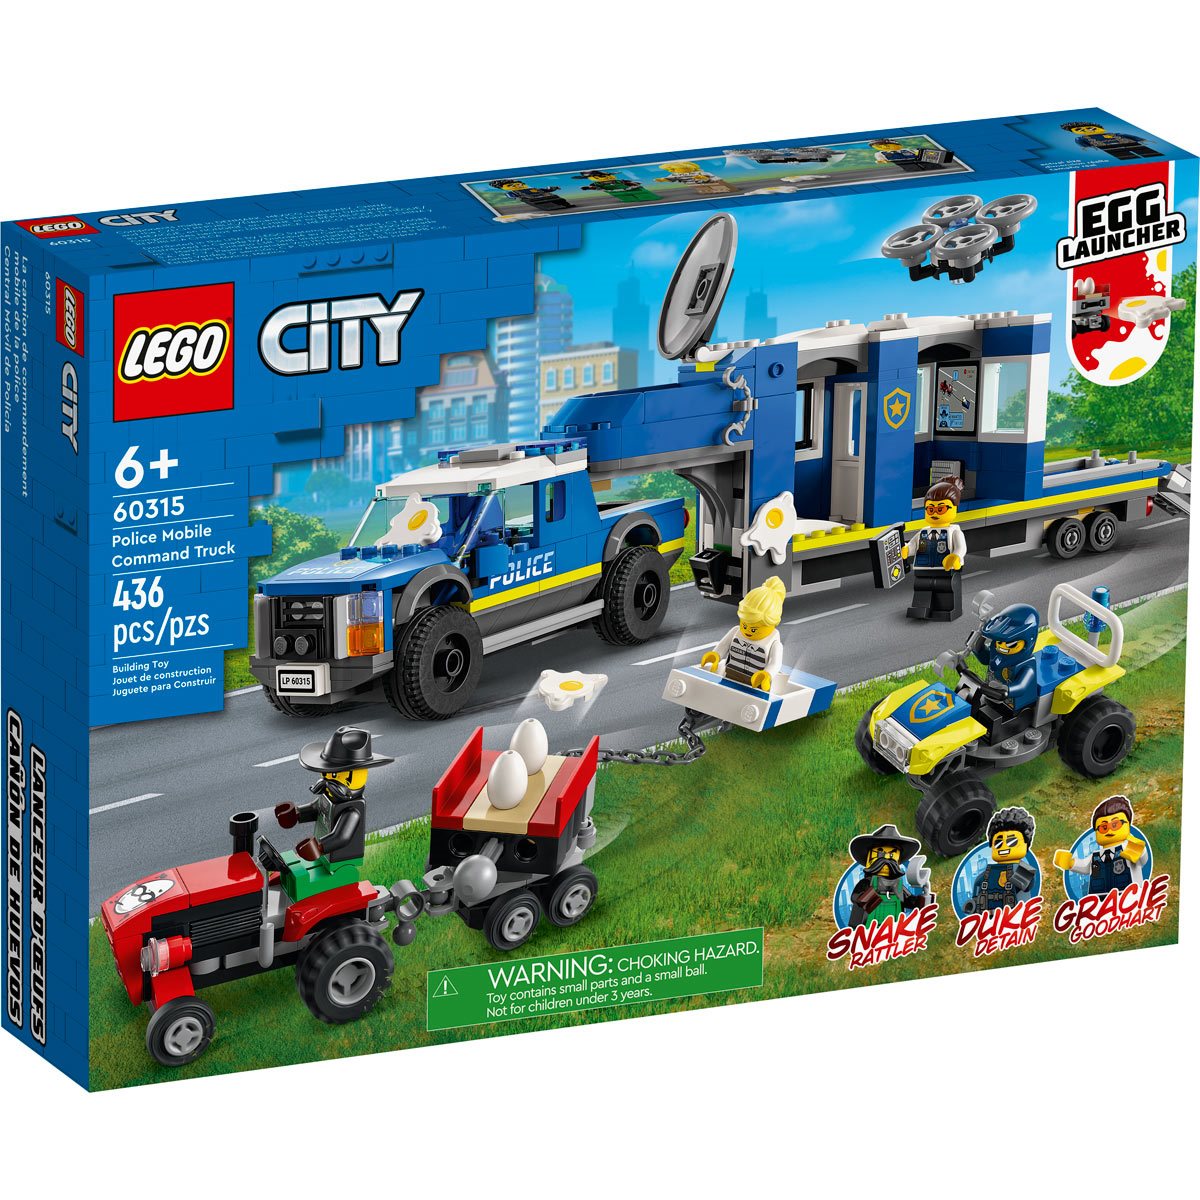 Etna voordat Theoretisch LEGO 60315 City Police Mobile Command Truck